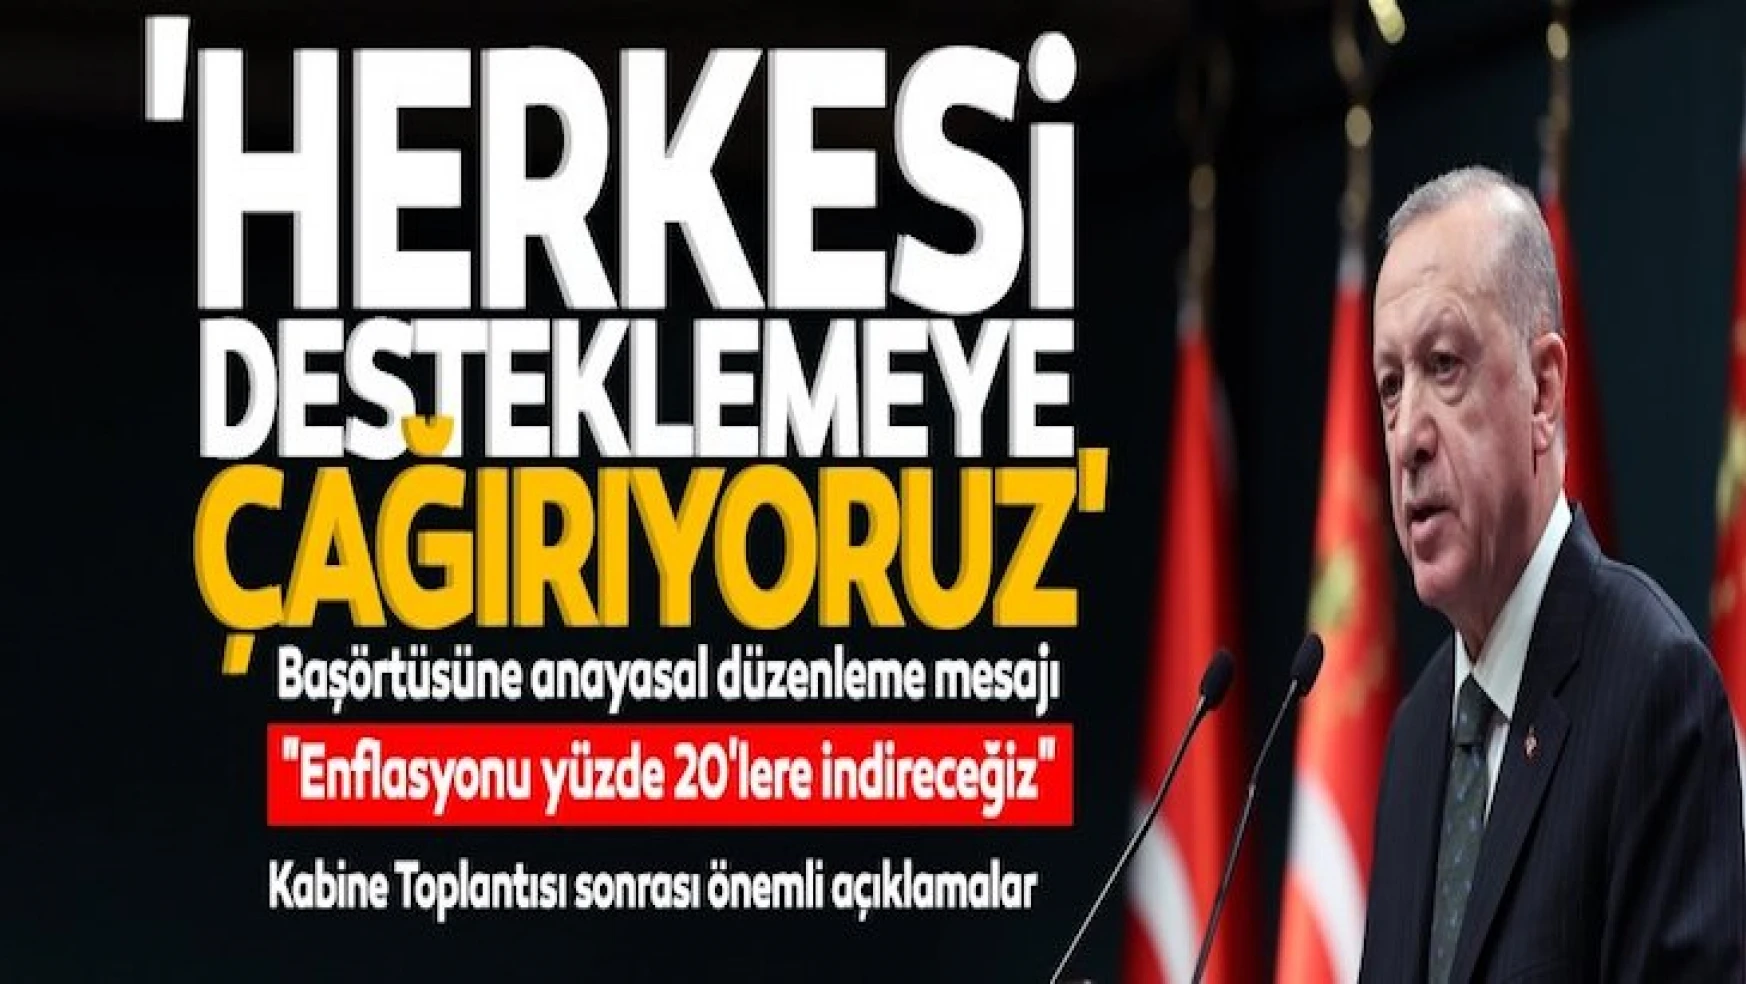 Erdoğan'dan enflasyon, öğrenci bursuna zam ve başörtüsü düzenlemesi konusunda flaş açıklama